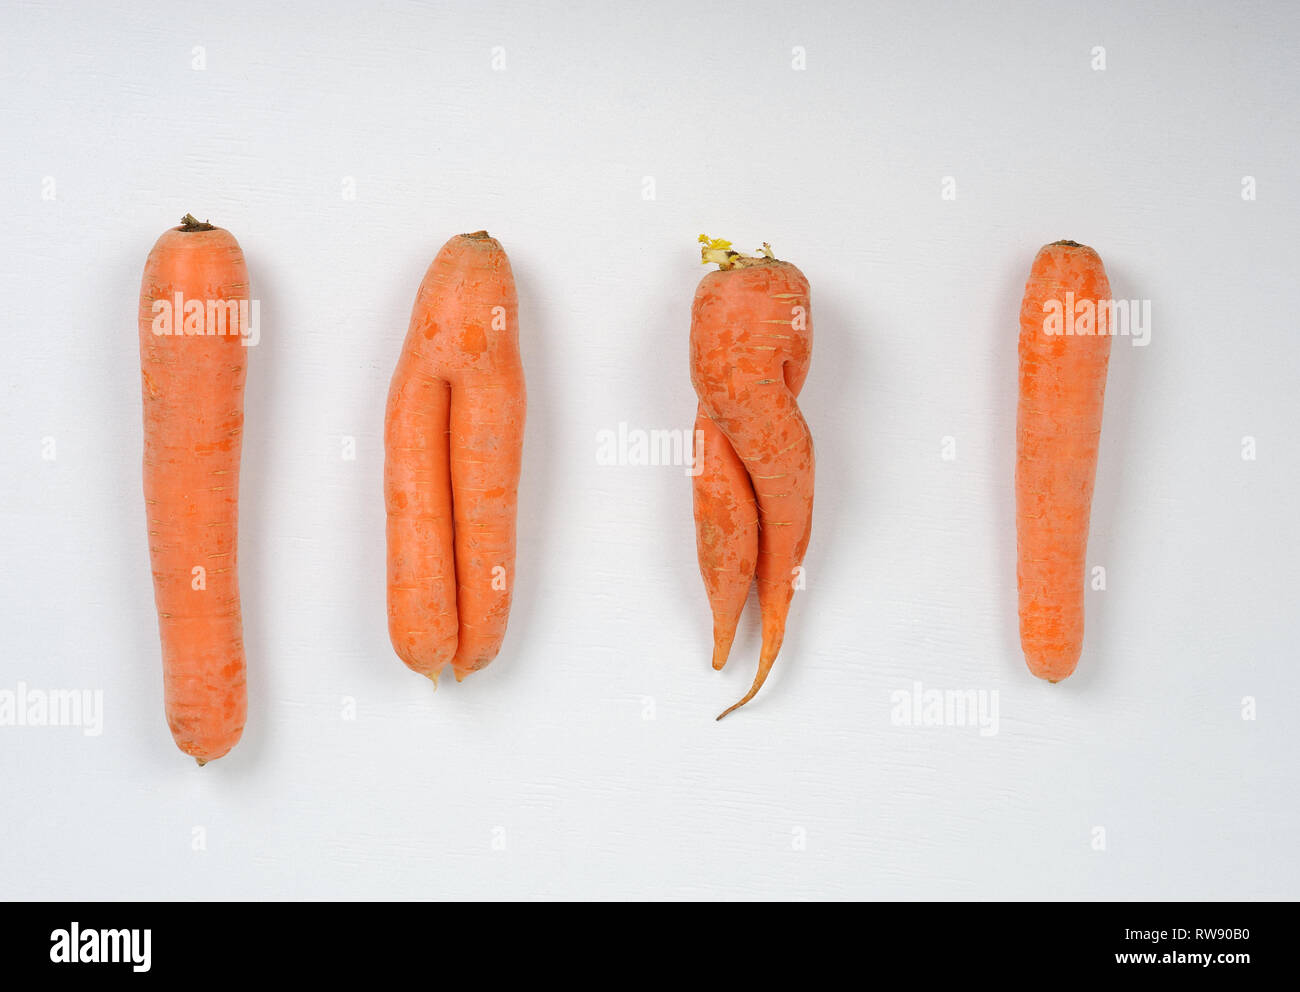 Brutto carote.It è appena come nutriente e gustosa come tutte le altre carote, ma è una forma leggermente diversa. Foto Stock